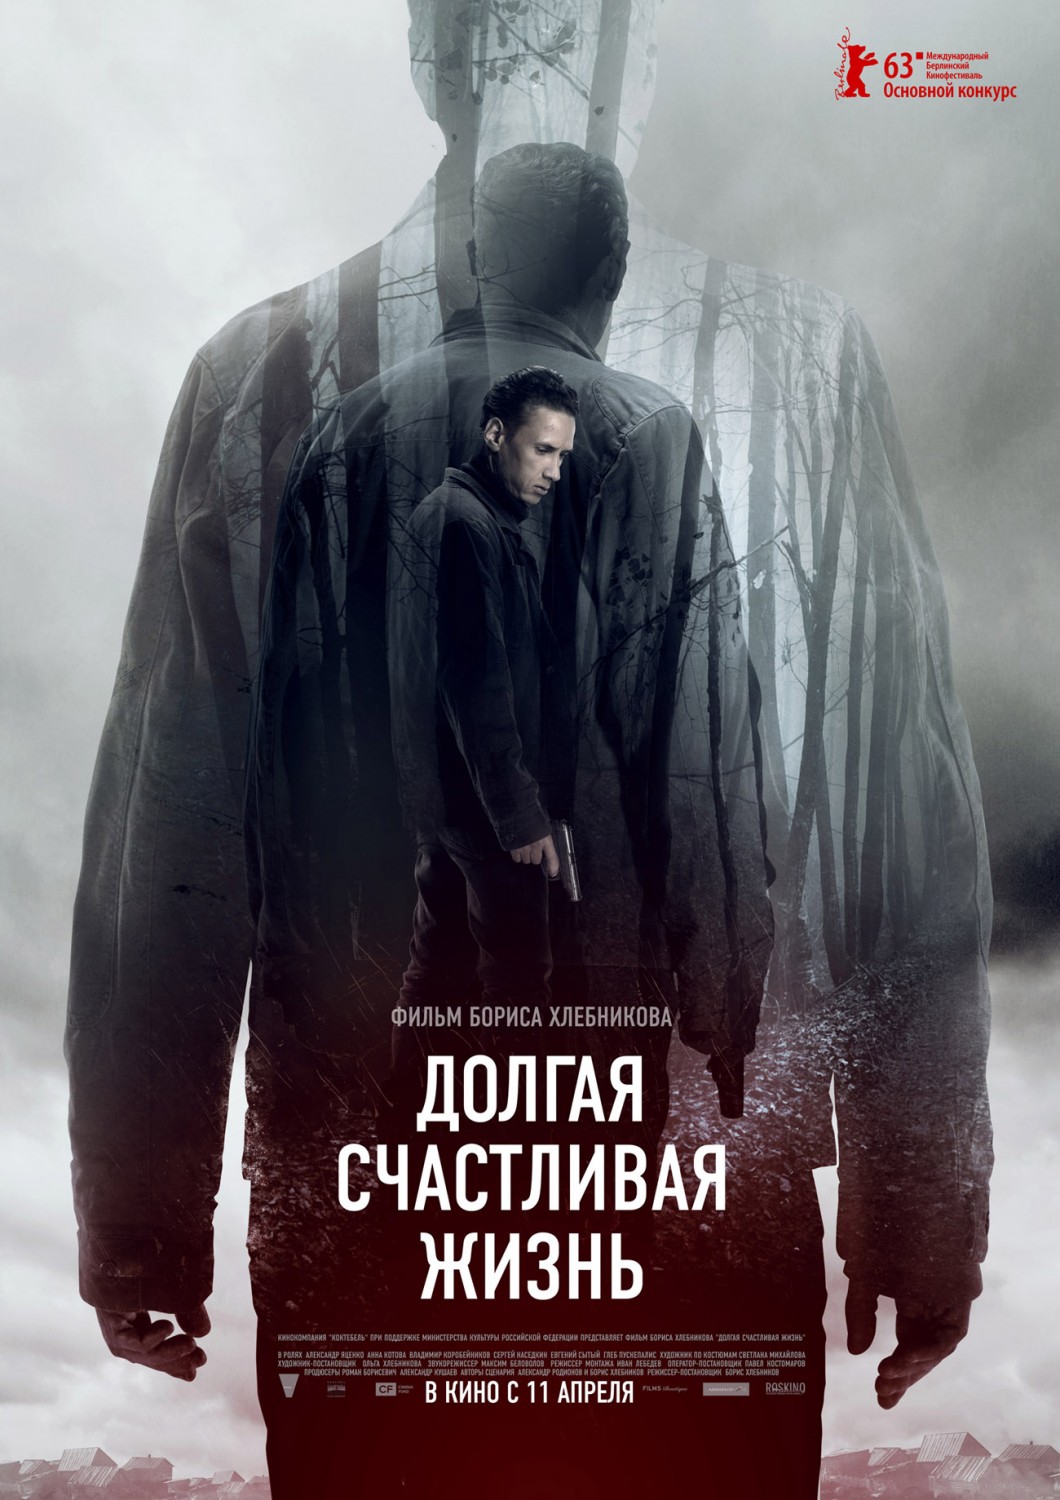 Extra Large Movie Poster Image for Dolgaya schastlivaya zhizn 